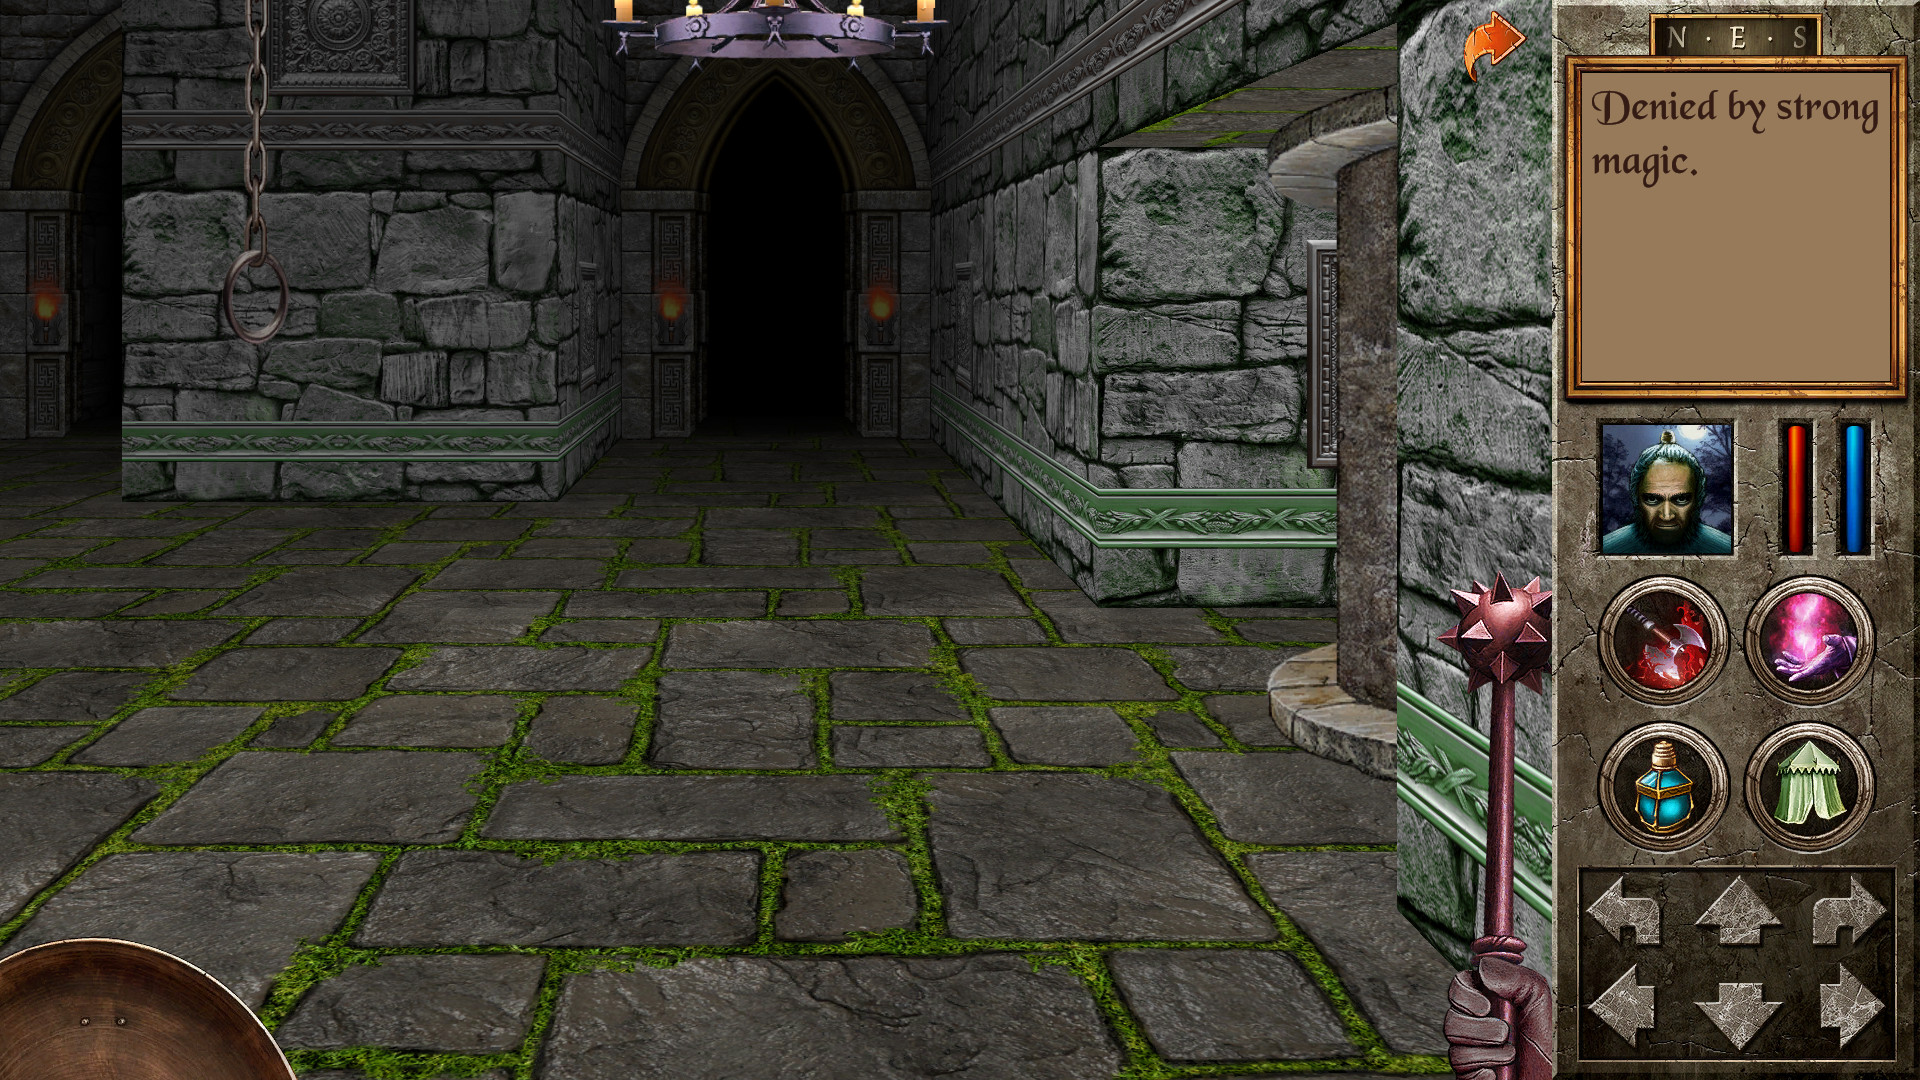 Игра квест 2000. The Quest игра Redshift. Quest 2006. Quest игра 2000. The Quest (2006 Video game).